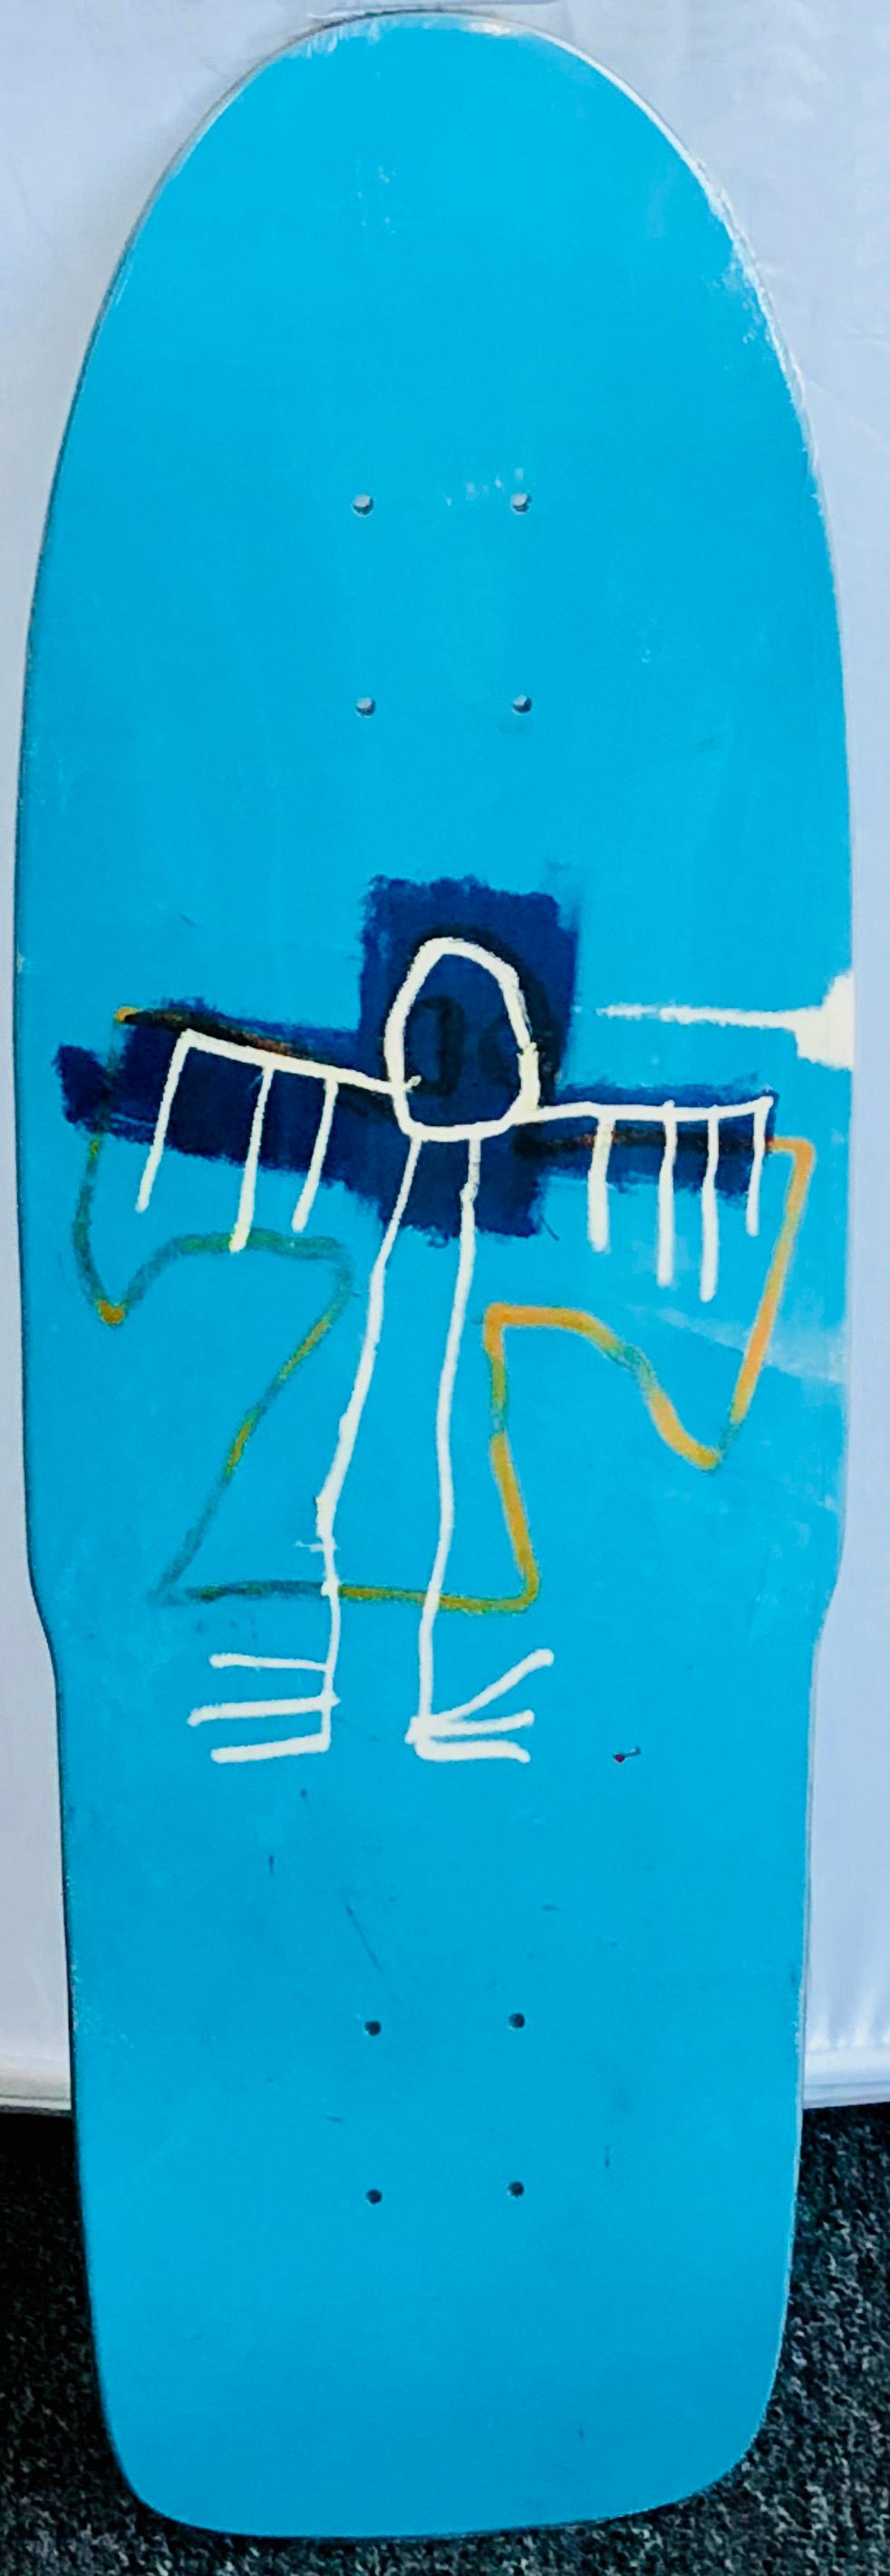 Jean-Michel Basquiat Skateboard Deck :
Pont de skate en édition limitée sous licence de la succession de Jean Michel Basquiat en collaboration avec Artestar en 2018, mettant en vedette l'œuvre très emblématique du début des années 80, (sans titre)